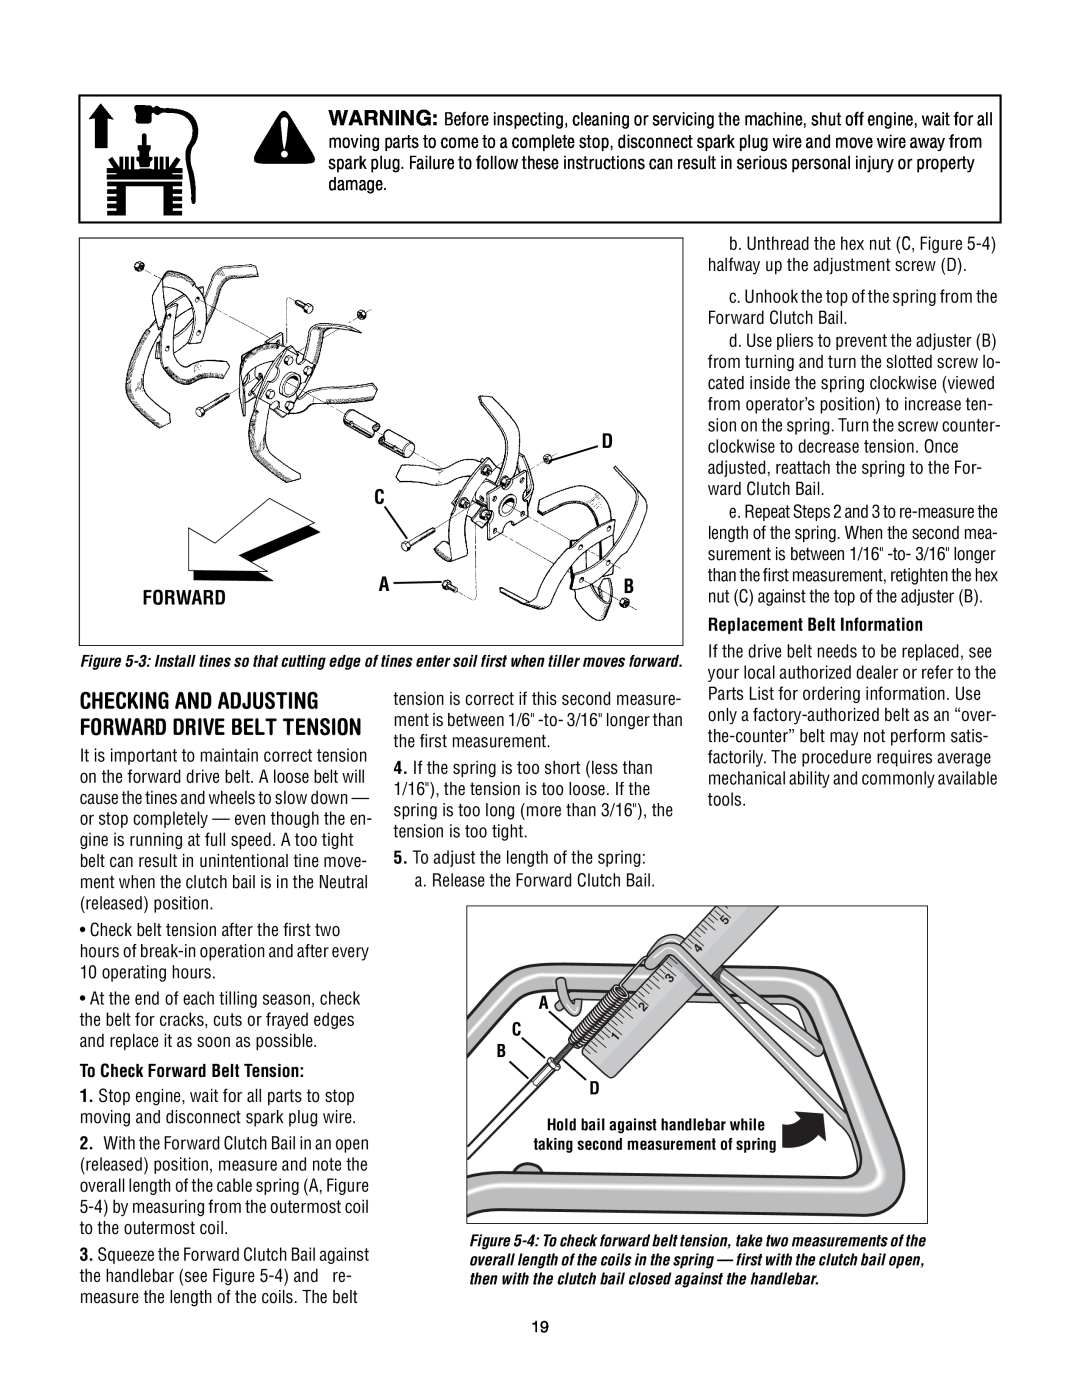 Troy-Bilt Super Bronco manual Checking And Adjusting, Forward Drive Belt Tension, Replacement Belt Information 